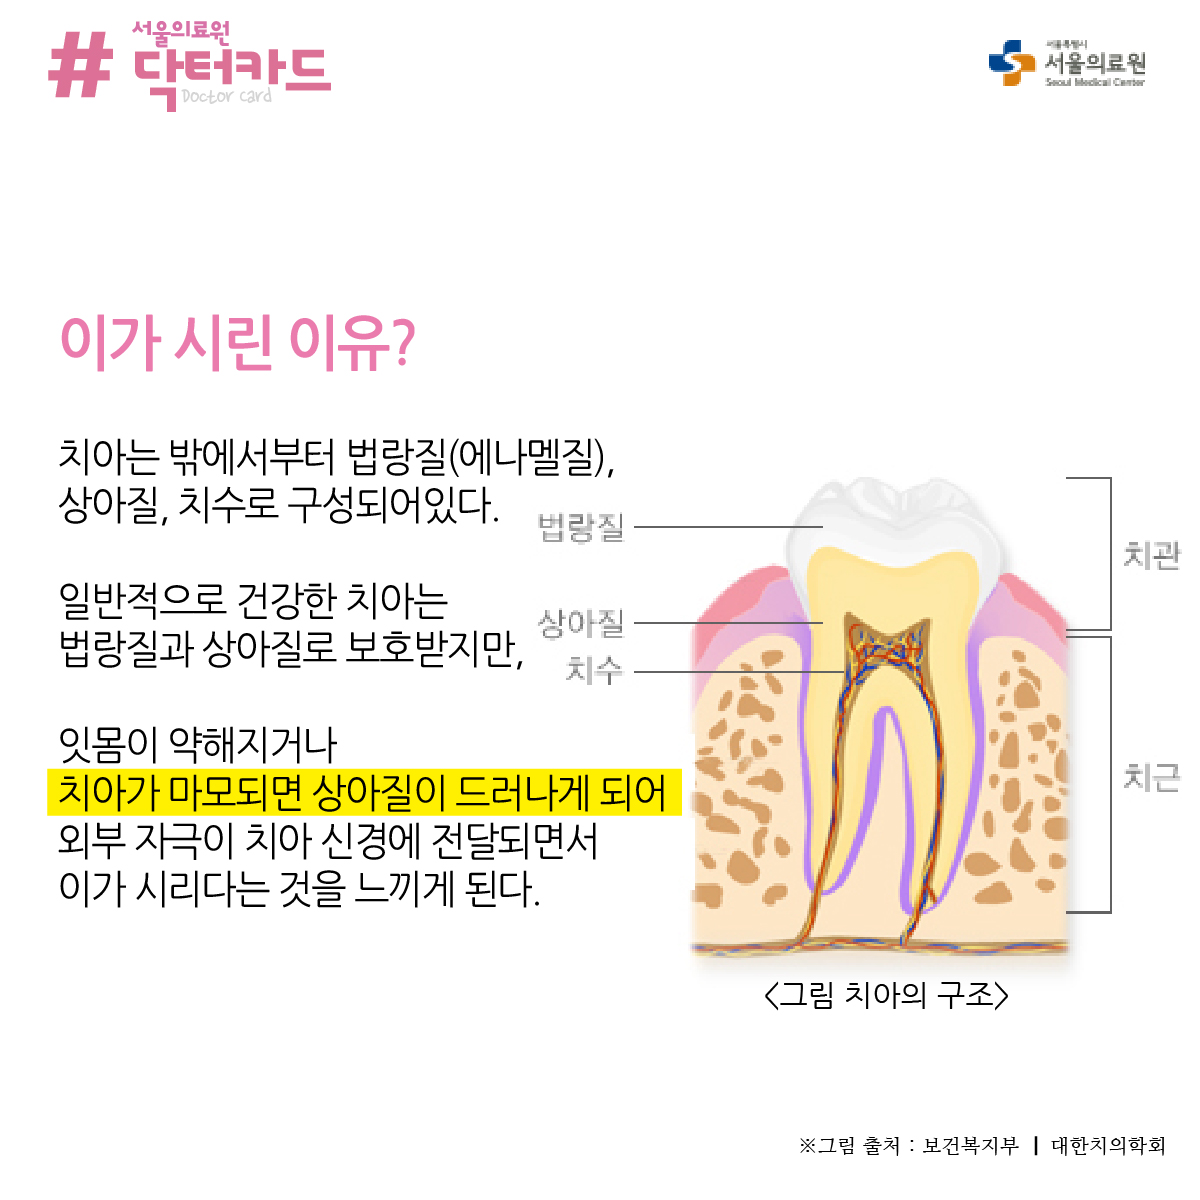 이가 시린 이유? 치아는 밖에서부터 법랑질(에나멜질), 상아질, 치수로 구성되어있다. 법랑질. 일반적으로 건강한 치아는 상아질 법랑질과 상아질로 보호받지만, 잇몸이 약해지거나 치아가 마모되면 상아질이 드러나게 되어 외부 자극이 치아 신경에 전달되면서 이가 시리다는 것을 느끼게 된다.